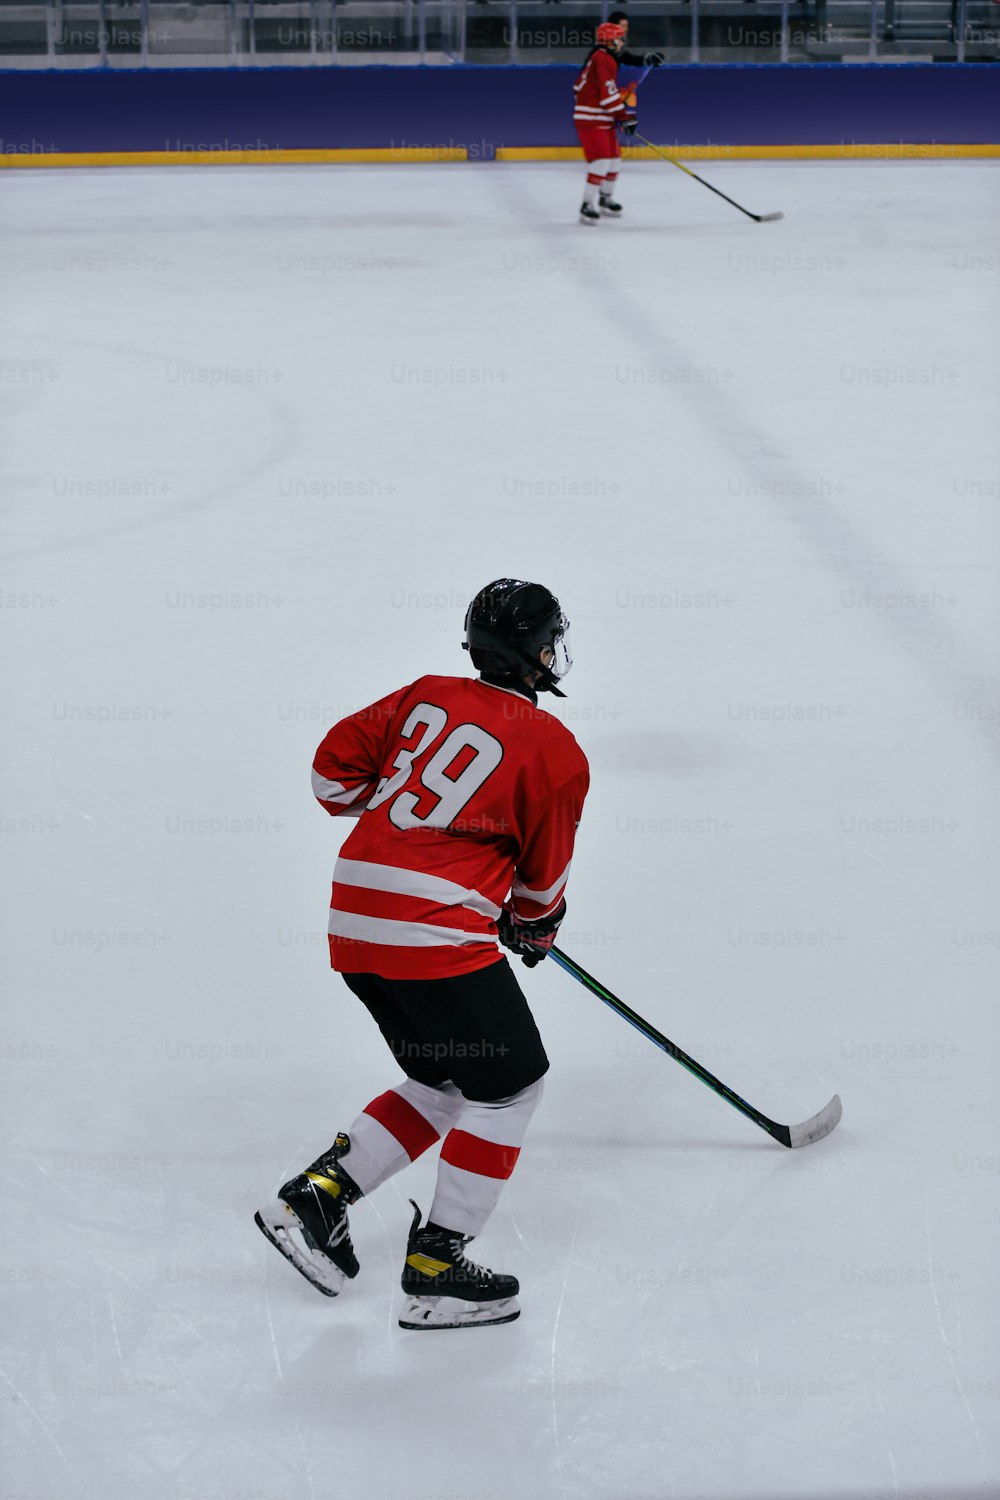 Un joueur de hockey portant un chandail rouge patinant sur la glace